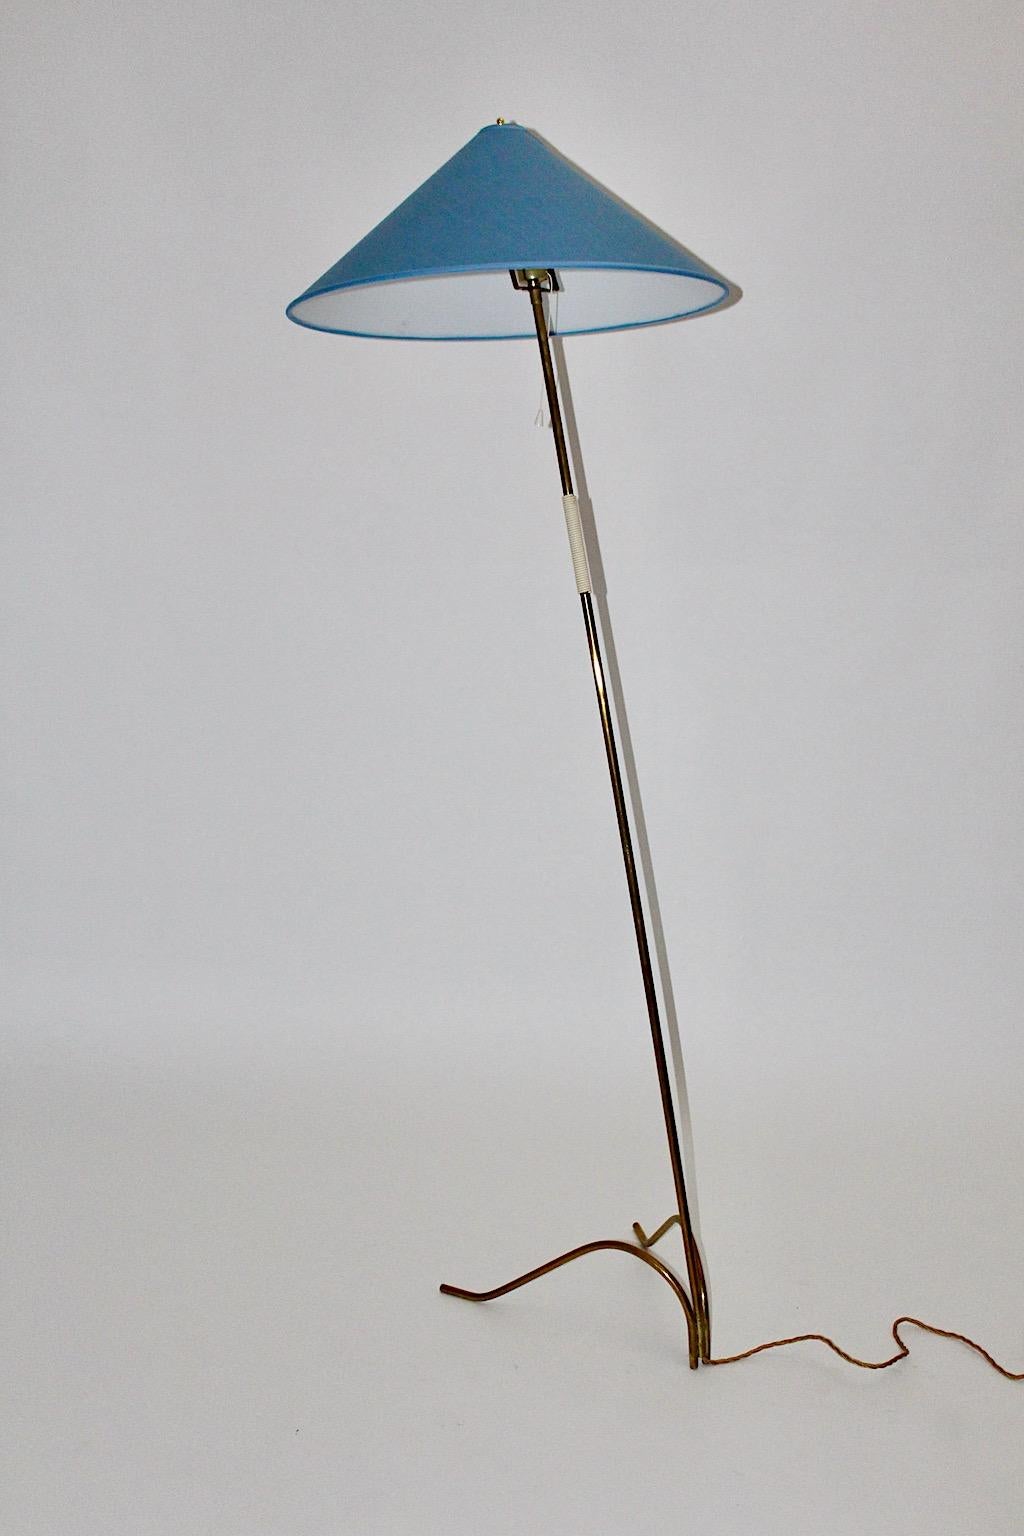 Lampadaire en laiton de Rupert Nikoll, 1950, Vienne.
Un magnifique lampadaire iconique en laiton avec une poignée en plastique pour une manipulation facile.
Alors que la base présente un important pied évasé en laiton, nous avons décidé d'utiliser